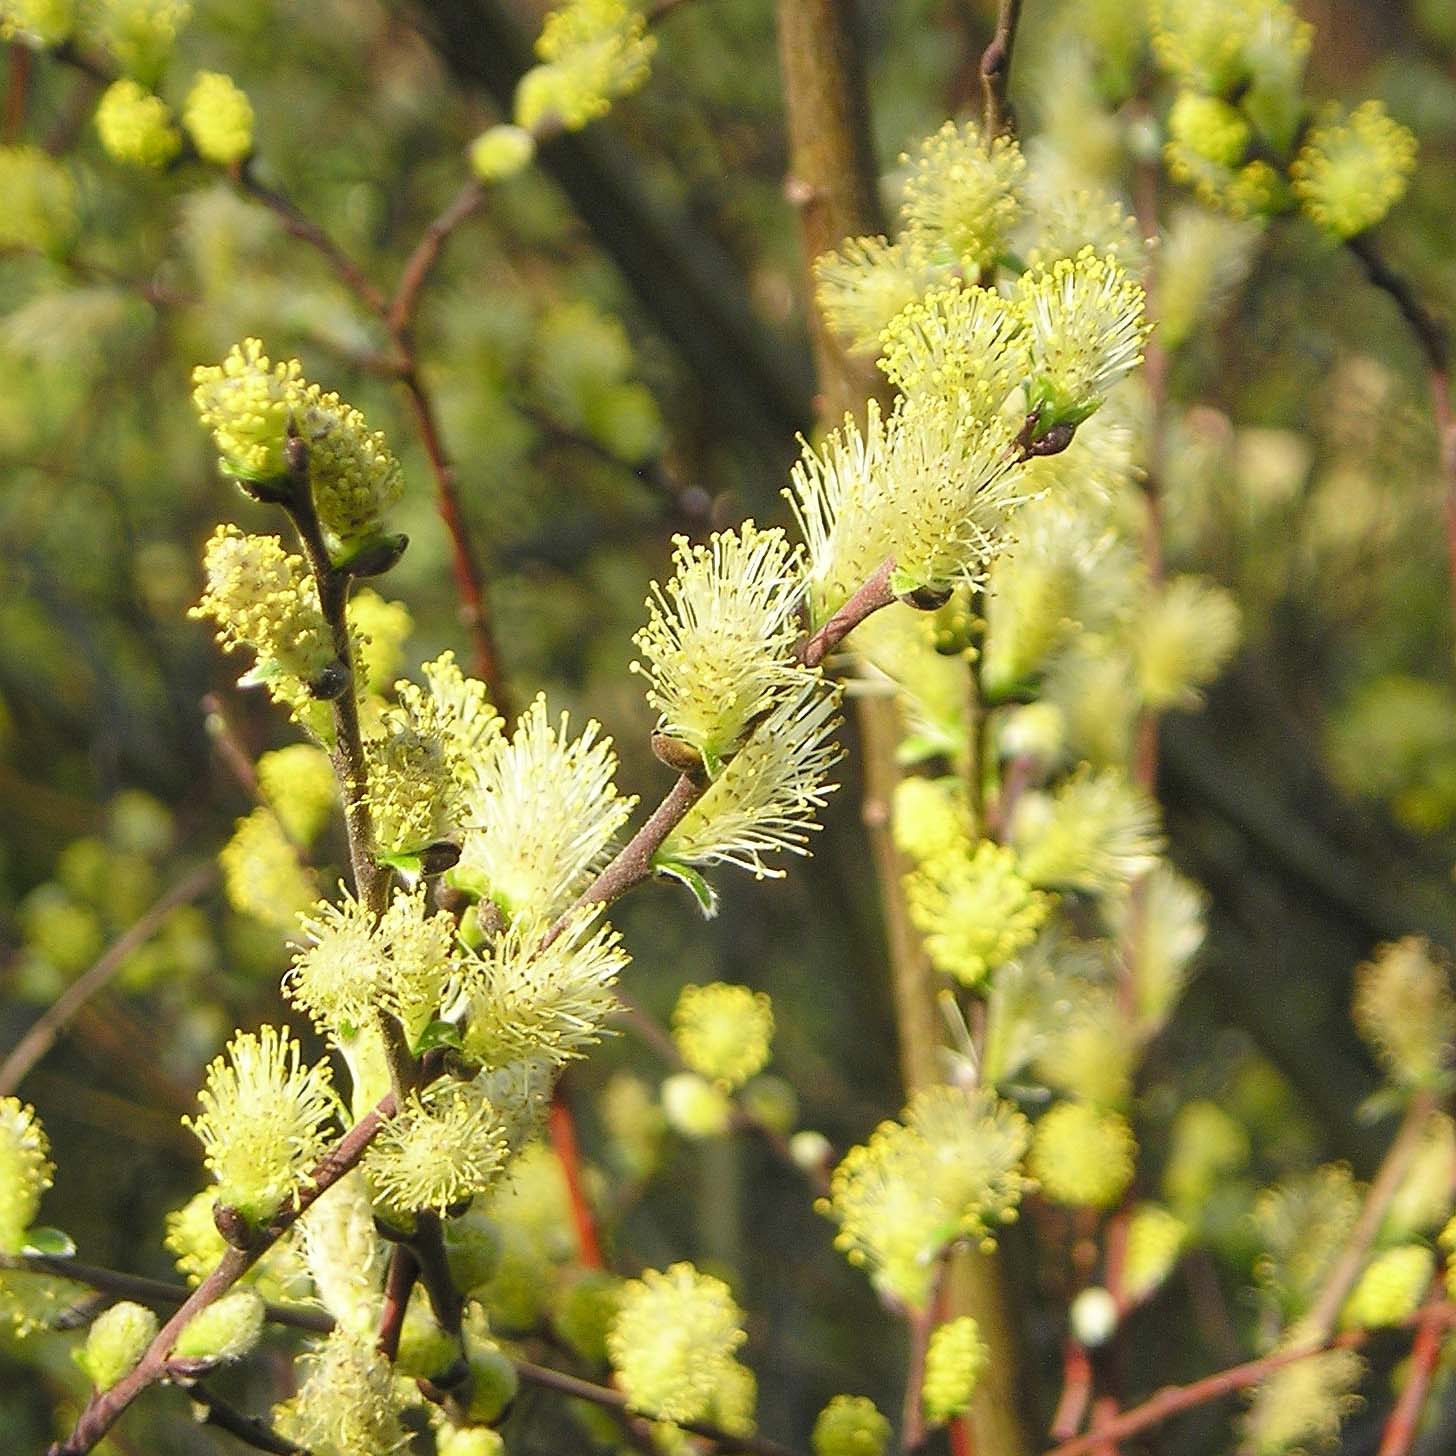 Salix repens - Saule rampant